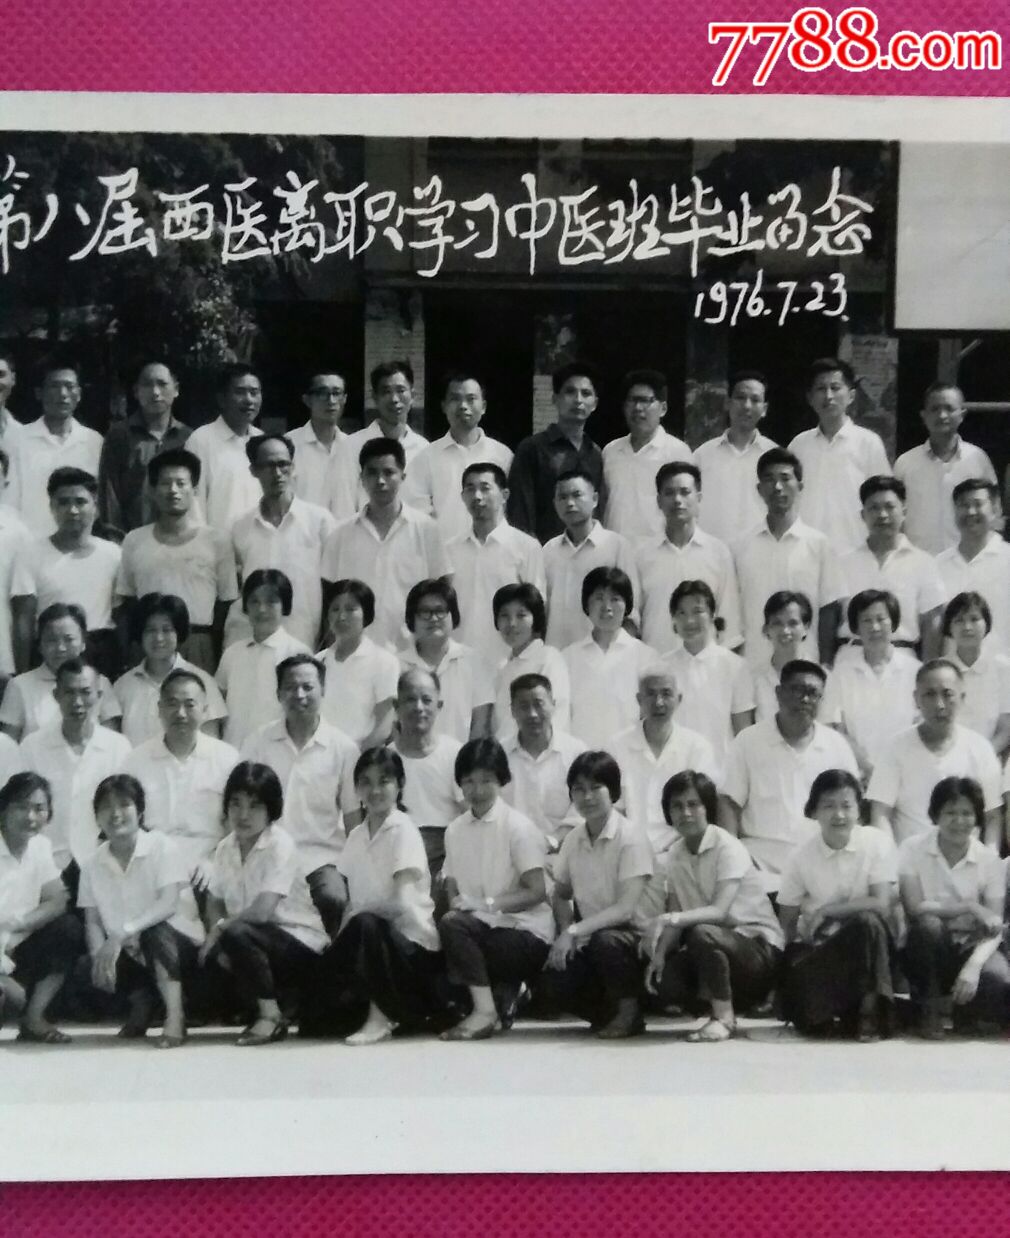 师生照片《湖北中医学院第八届西医离职学习中医班毕业留念1976年》